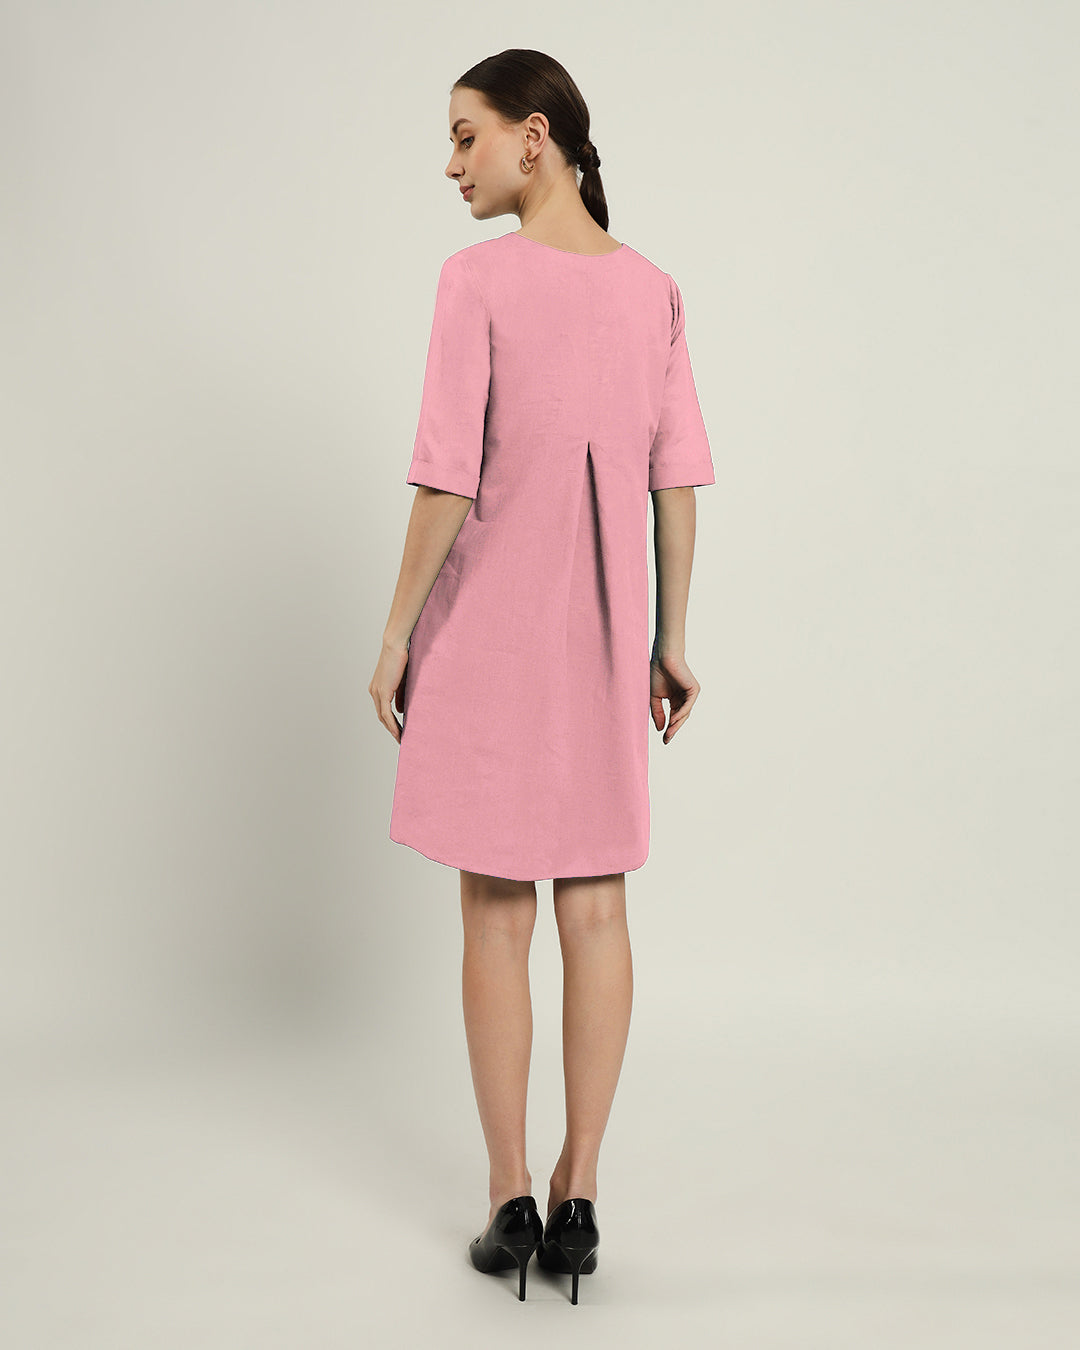 The Giza Fondant Pink Cotton Dress